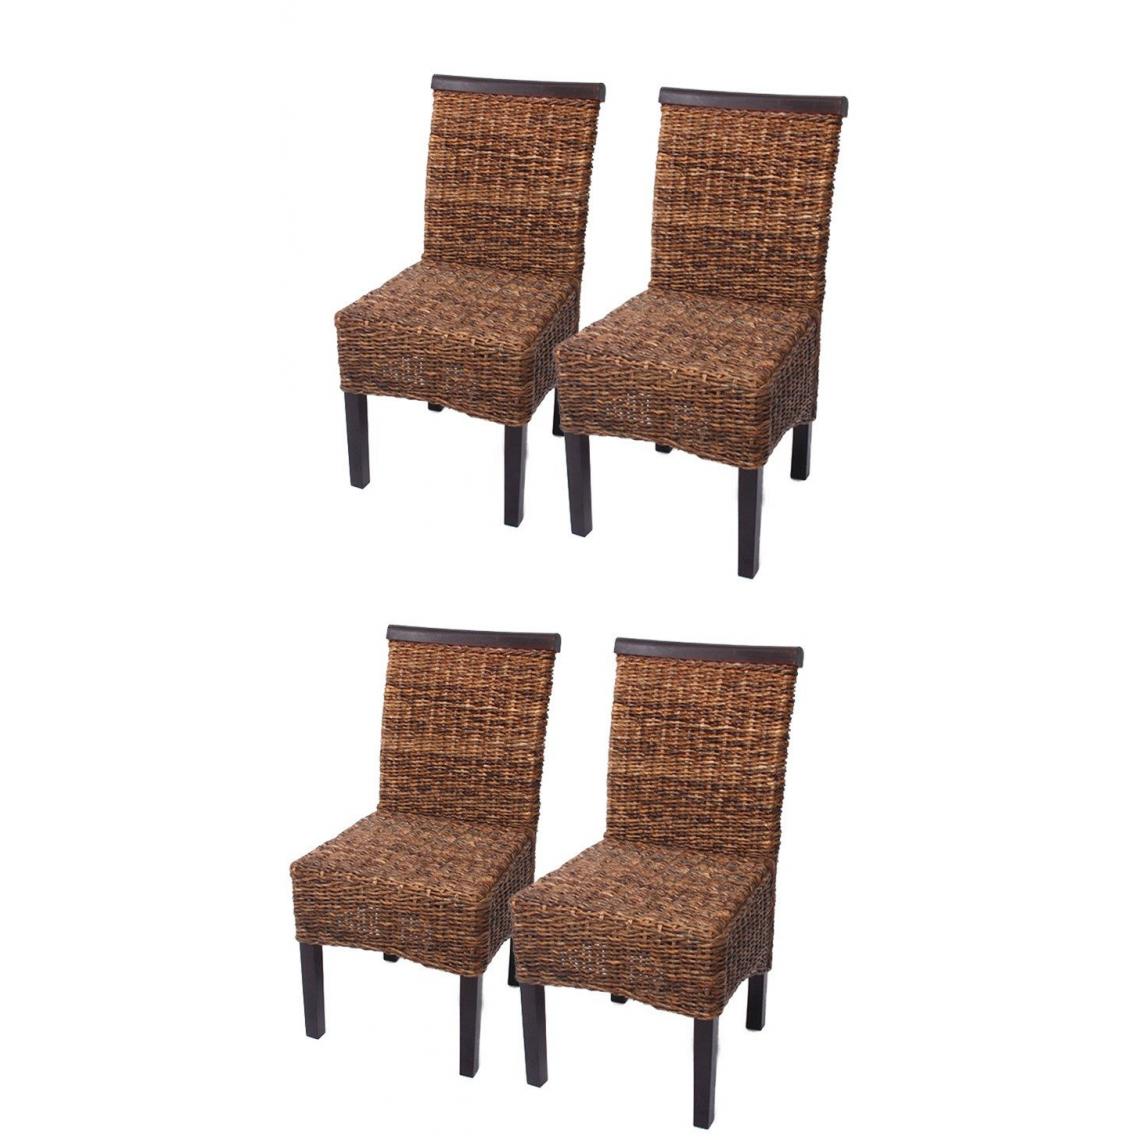 Decoshop26 - Lot de 4 chaises en rotin banane tressée pieds marron foncés CDS04105 - Chaises